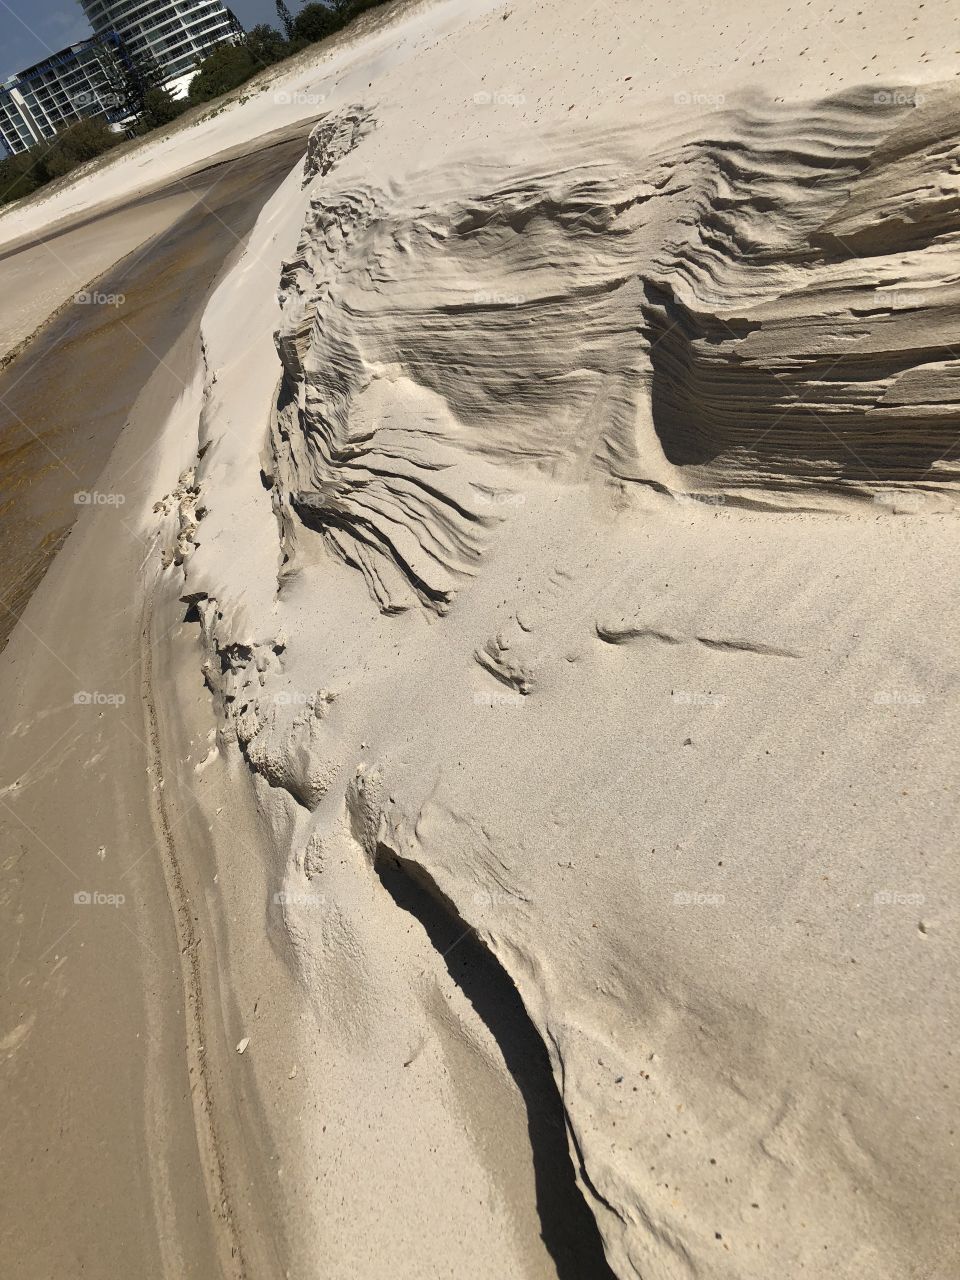 Eroding sand